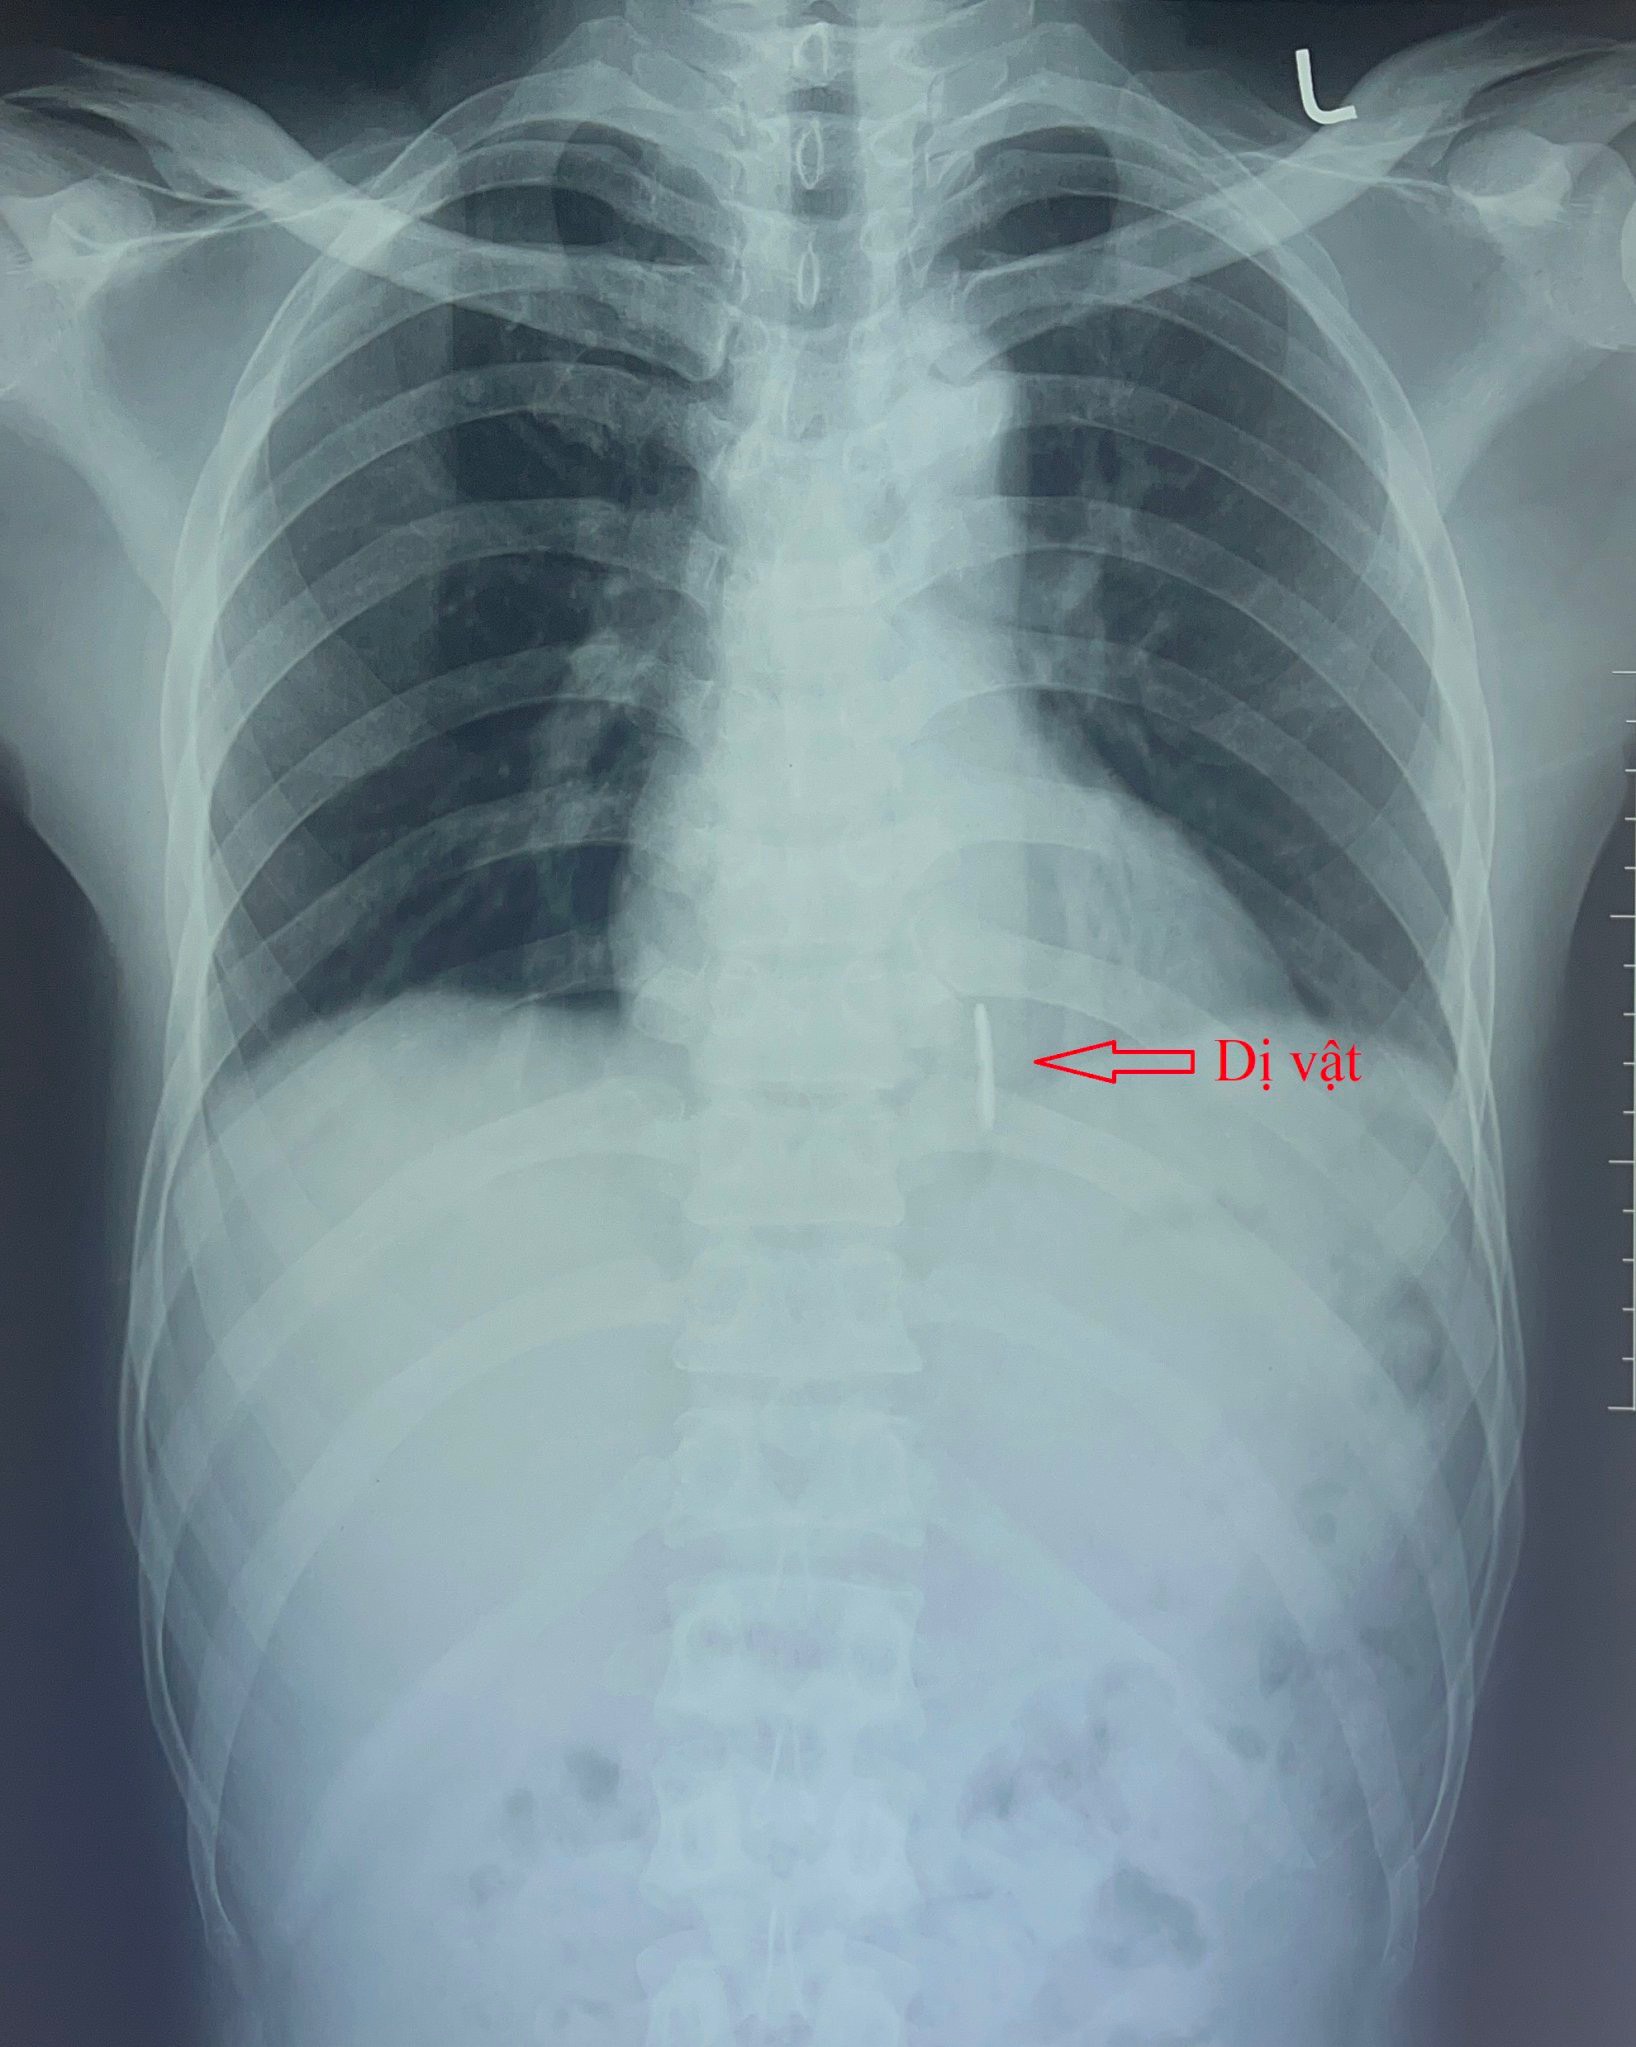 Hình ảnh dị vật trên phim X quang phổi.